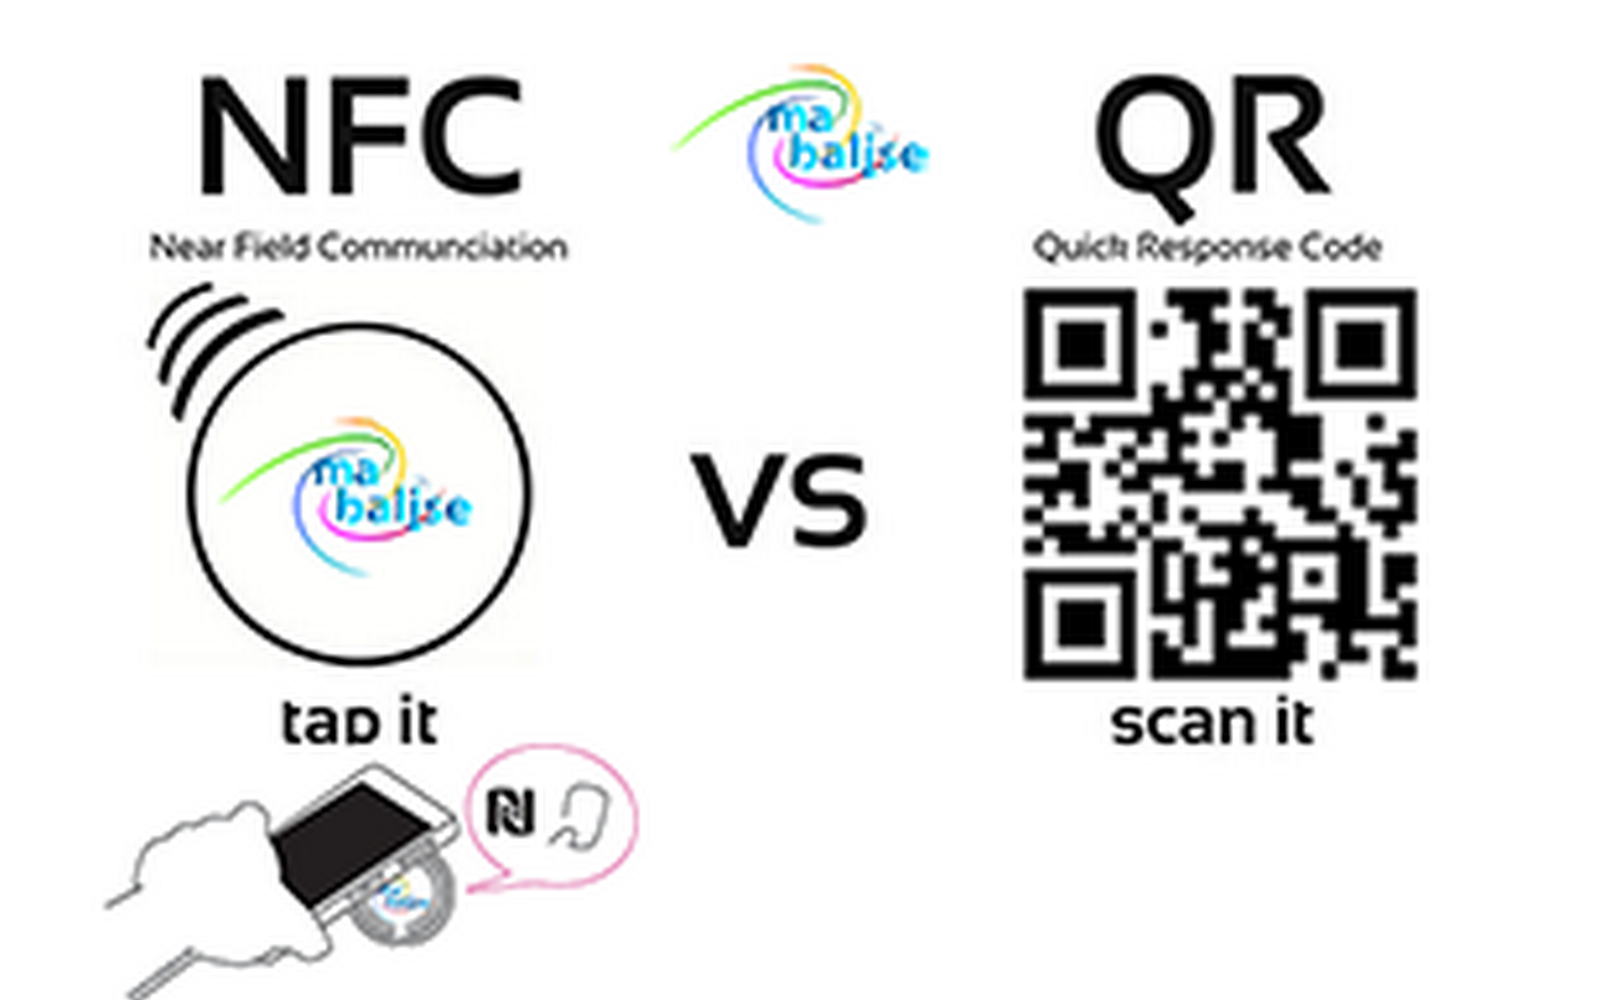 Quels sont les avantages de la NFC vs QR Code?